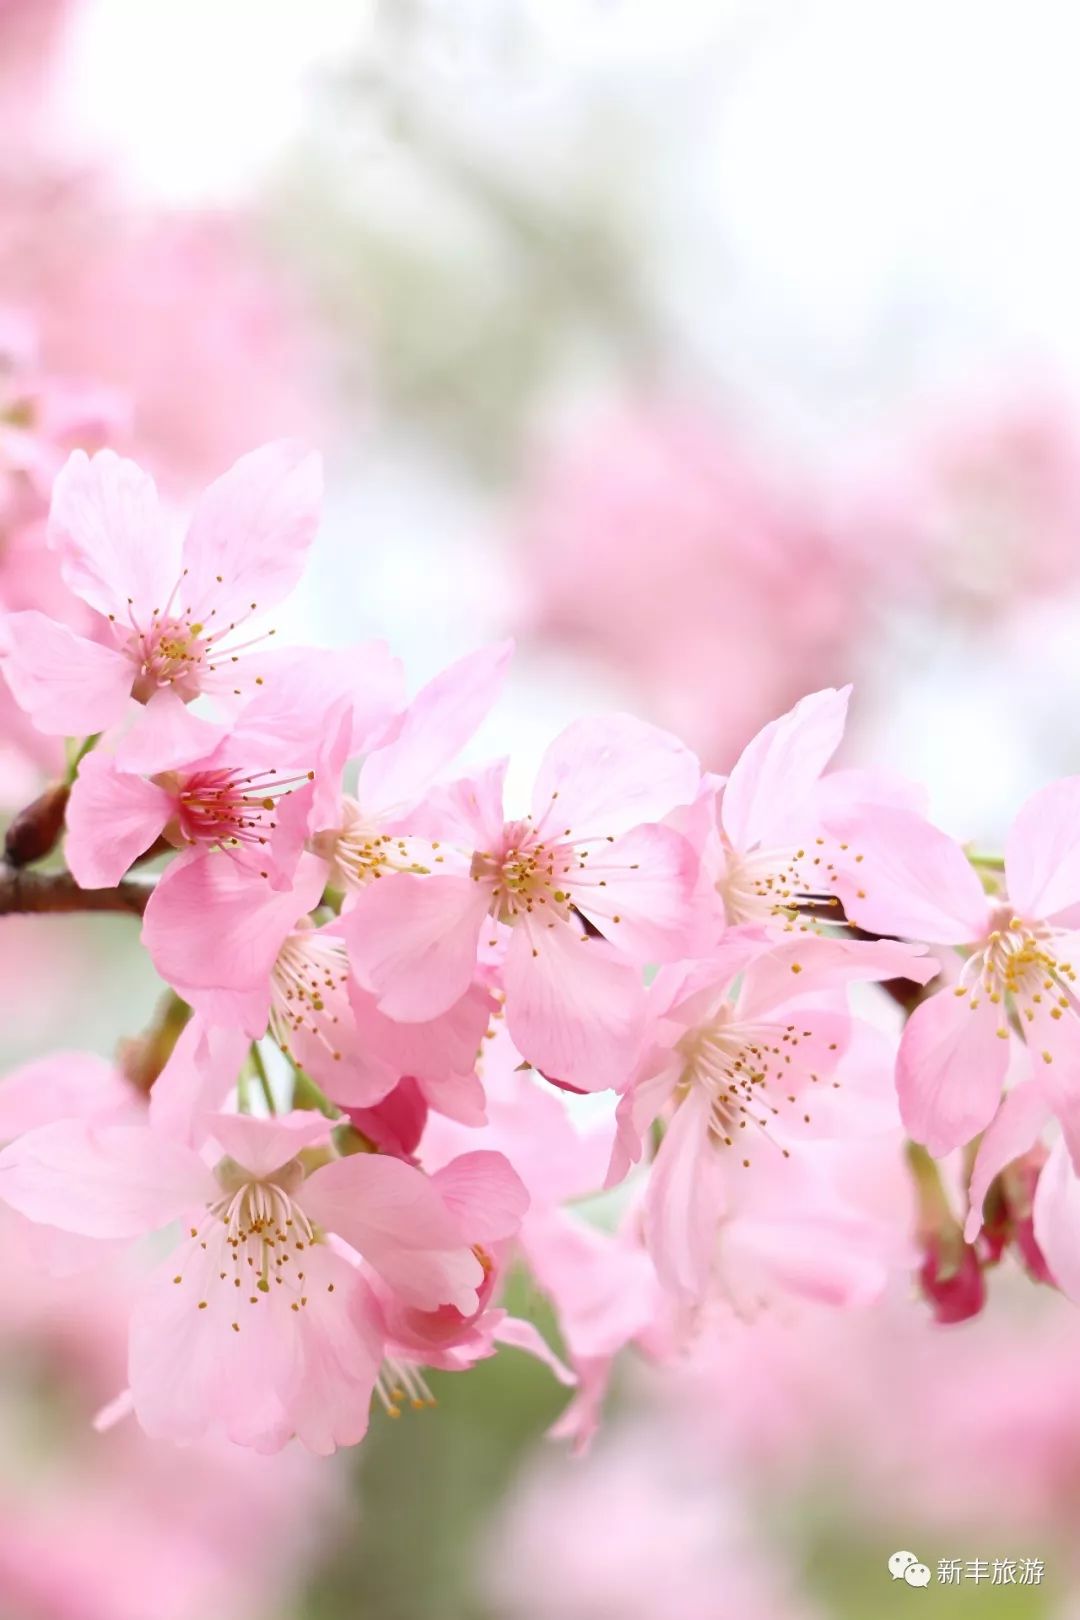 早春二月,新丰这个梦幻秘境,吉野樱花开胜雪,惊艳了春光!